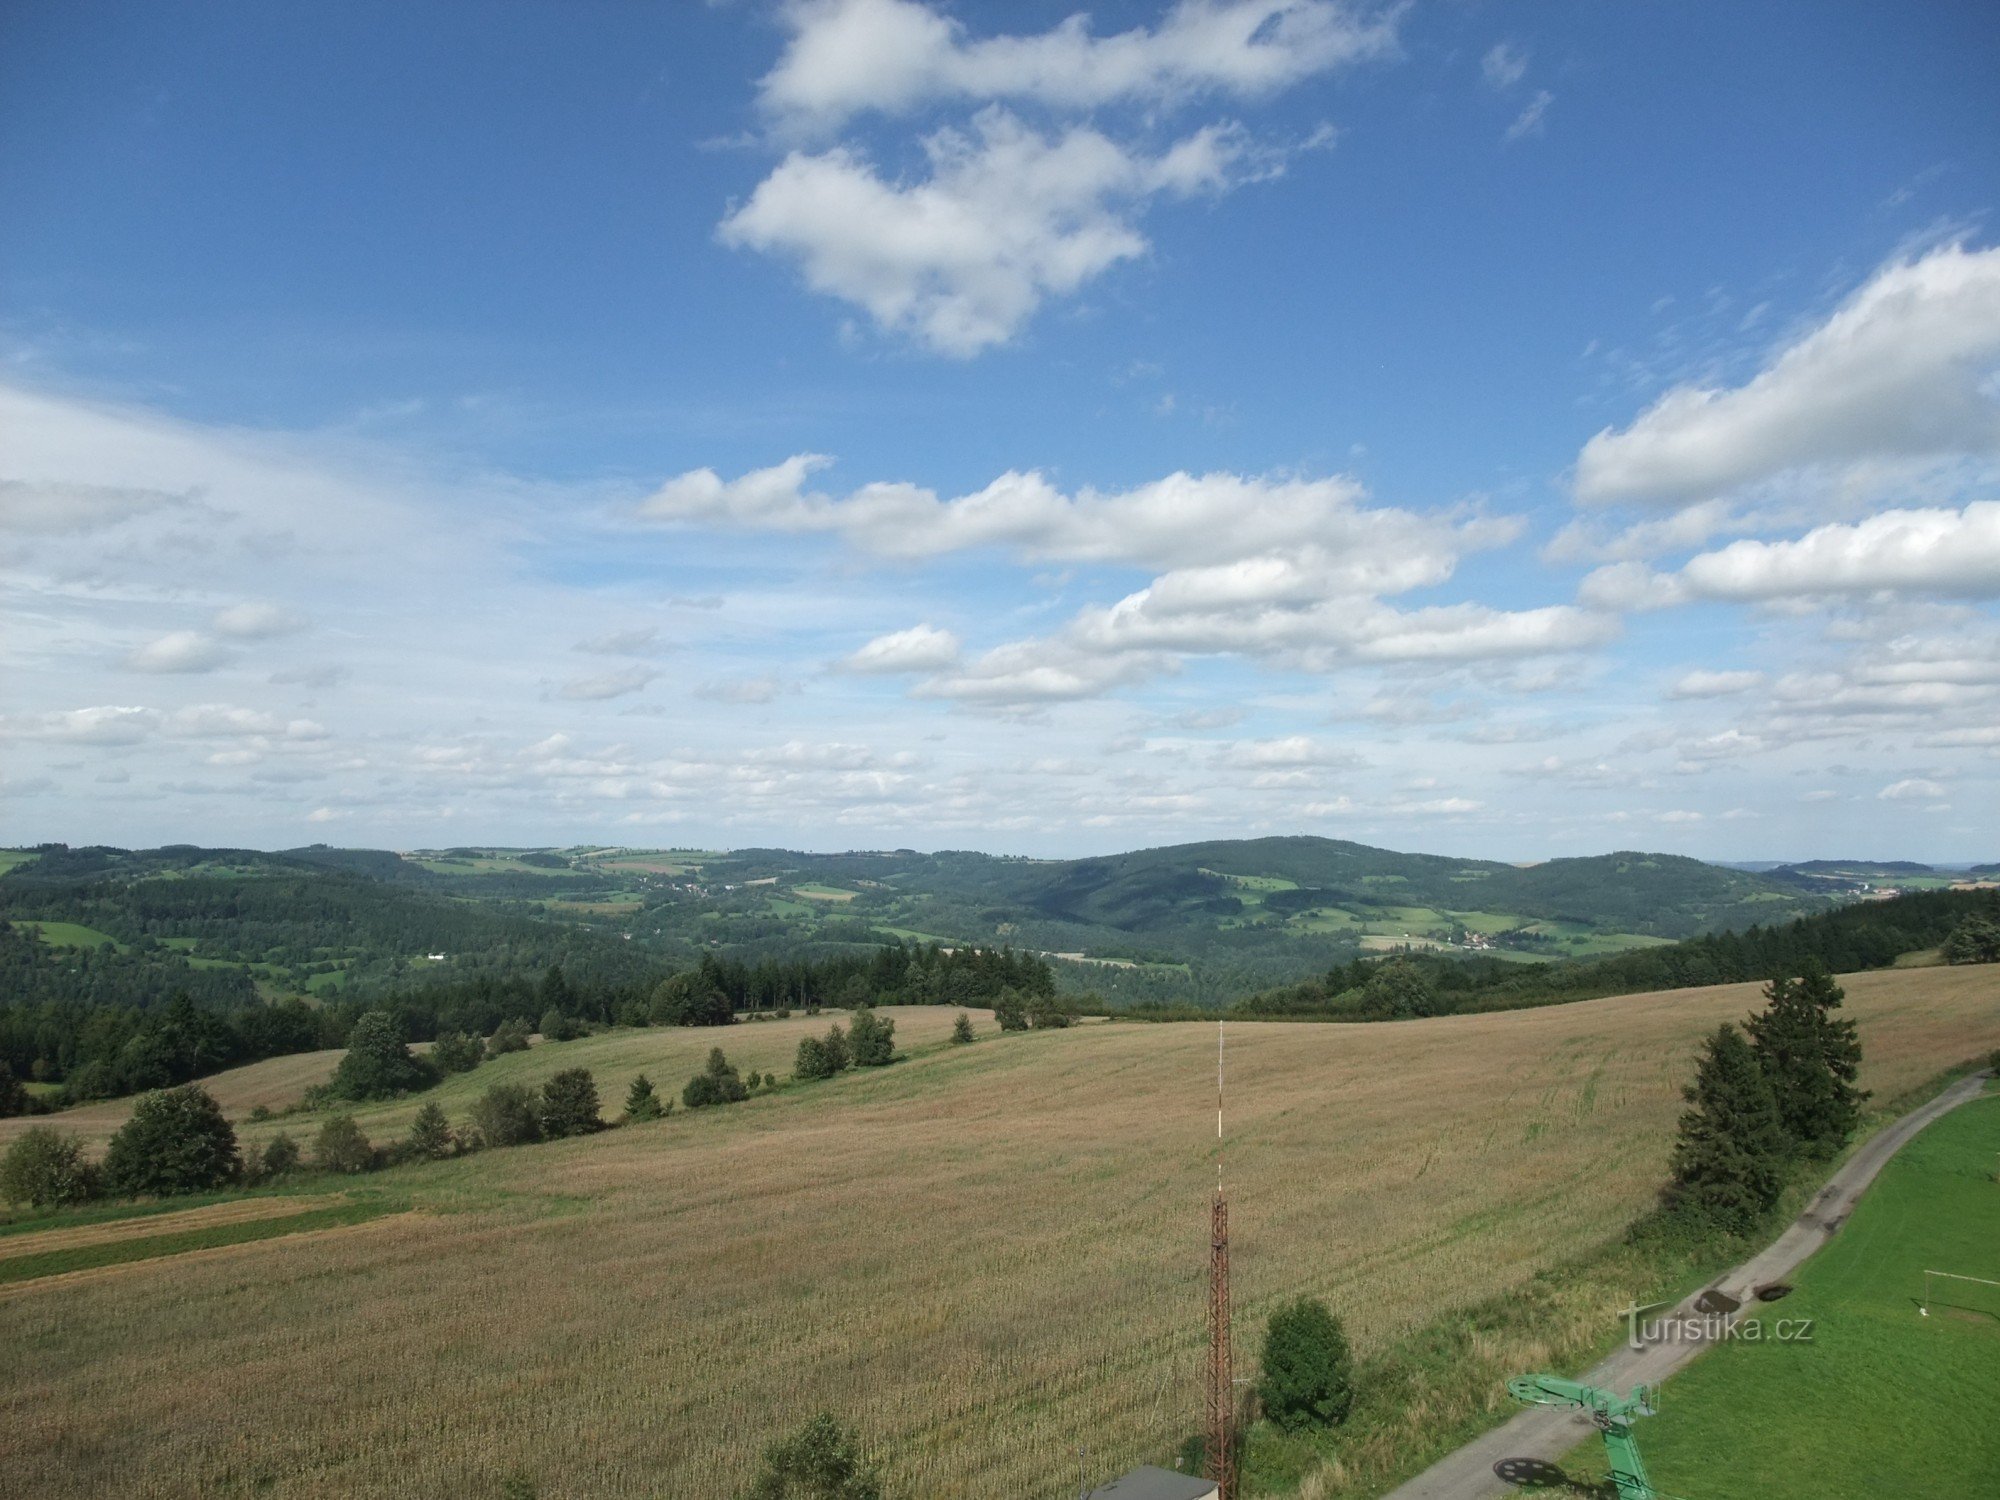 Näkymä Bohemian-Moravian Highlandsille